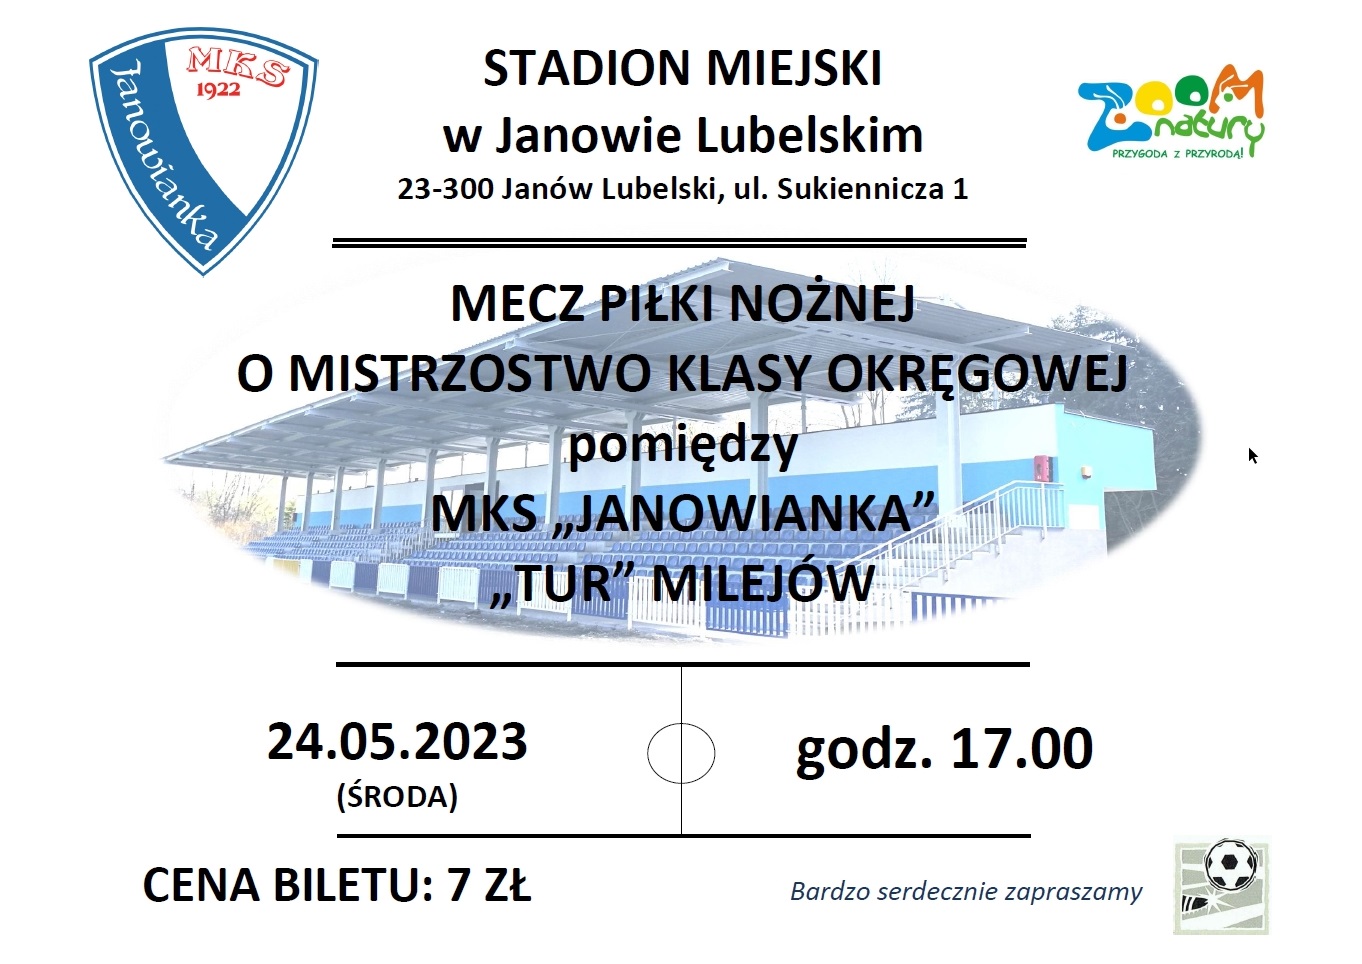 Plakat na mecz pomiędzy MKS Janowianka, a Tur Milejów który odbędzie się 24 maja 2023 roku w środę o godzinie 17:00 na Stadionie Miejskim w Janowie Lubelskim przy ulicy Sukienniczej 1. Cena biletu 7 zł.